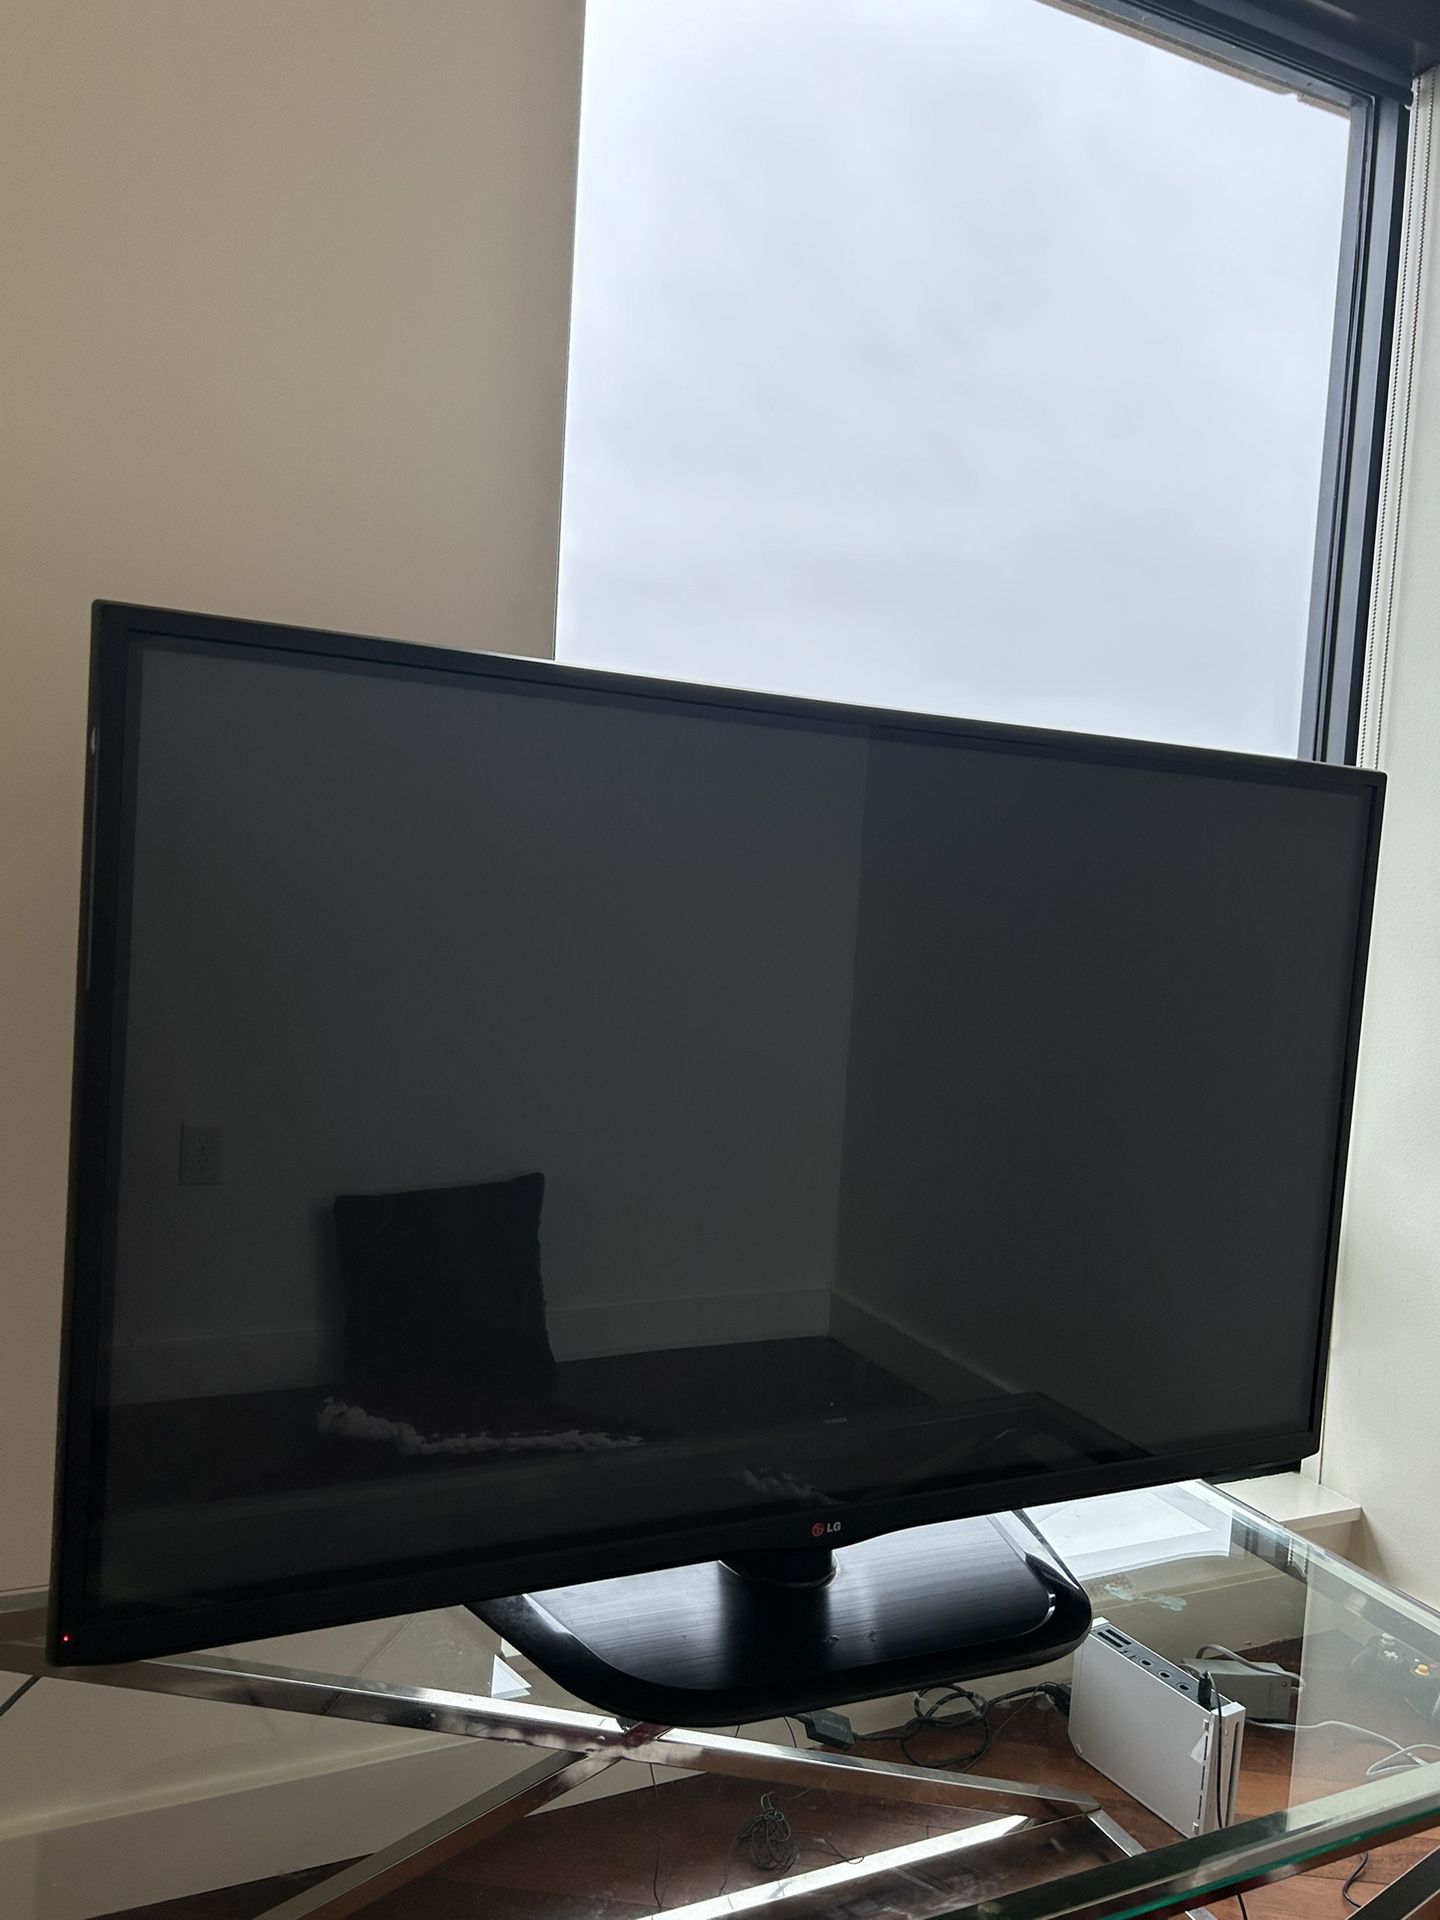 Lg 55 inch tv 